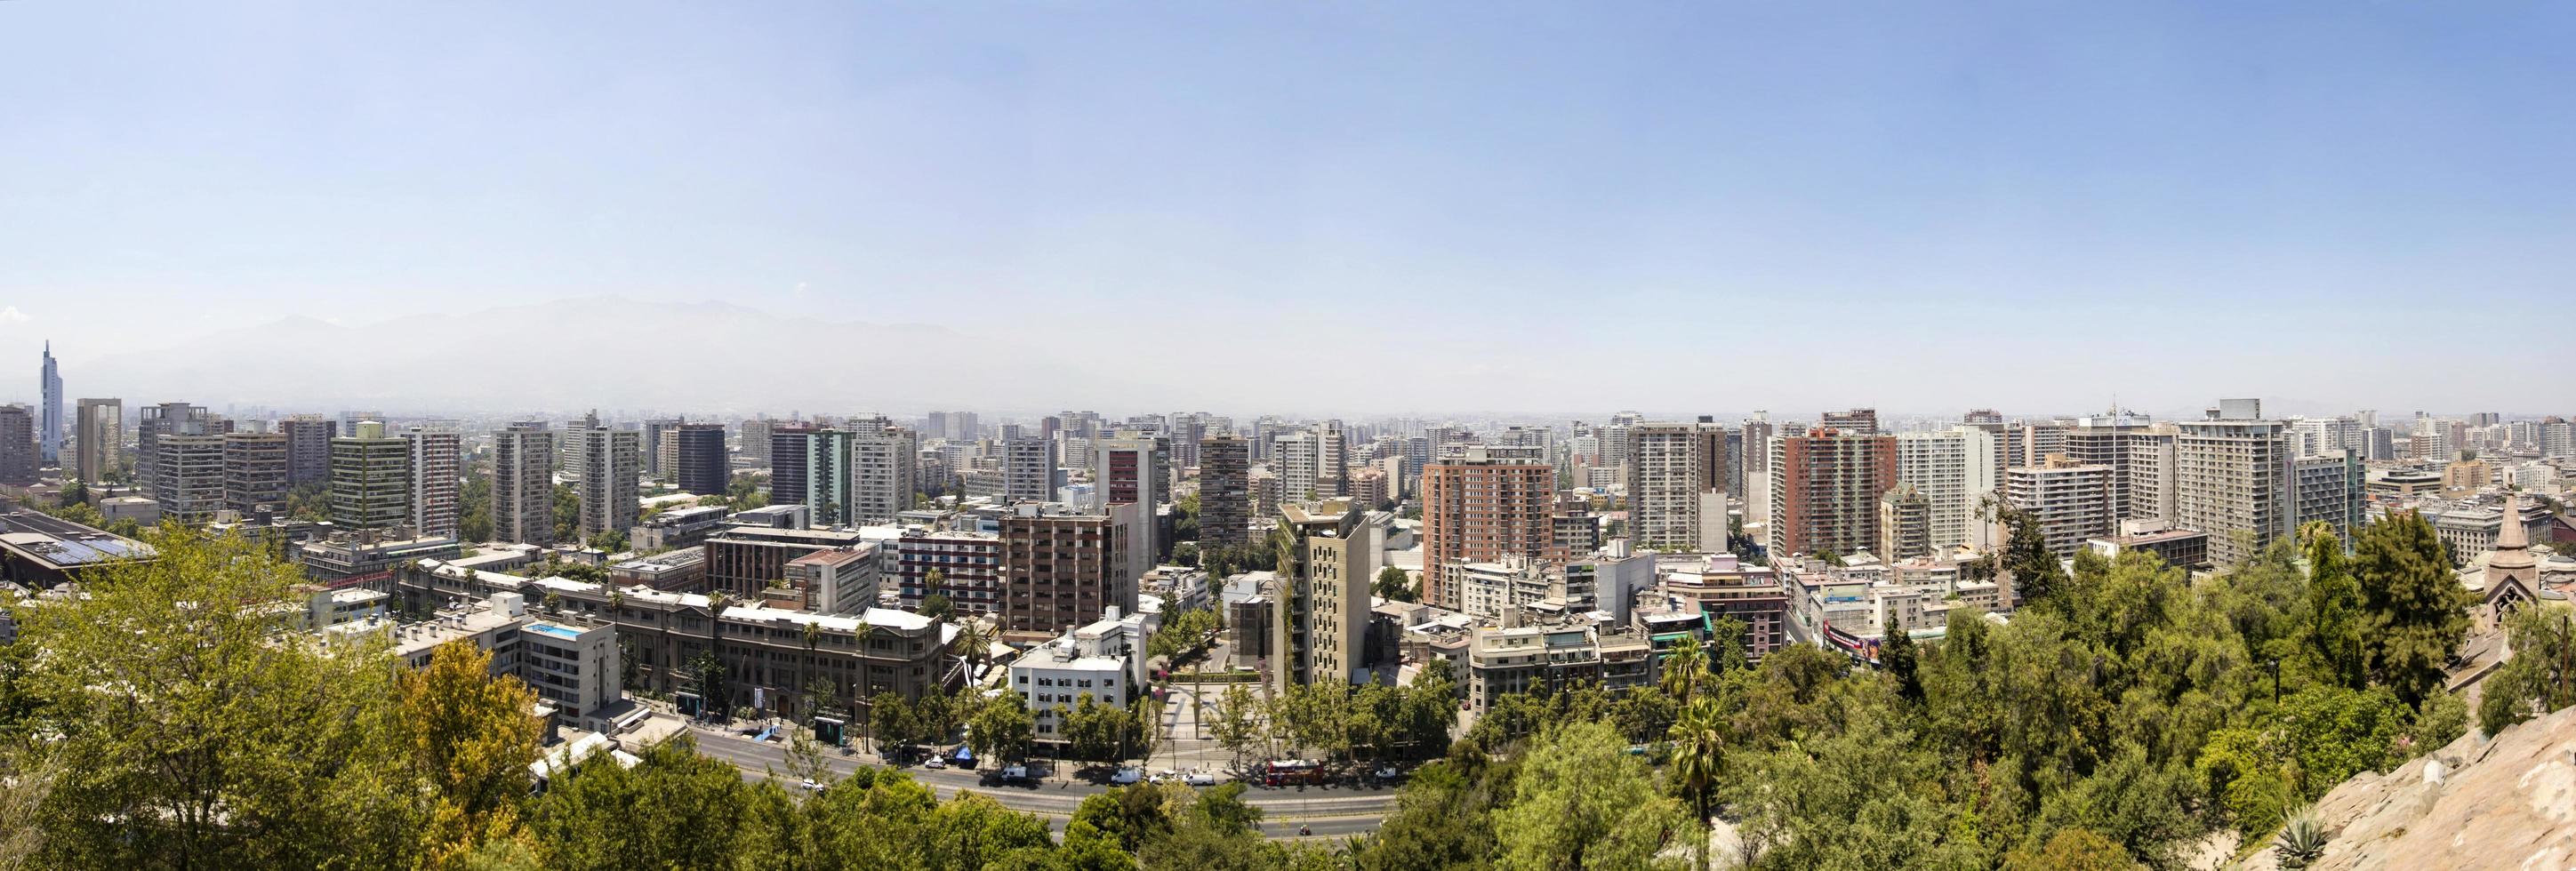 santiago, cile, 17 gennaio 2018 - vista panoramica a santiago, cile. con più di 5,5 milioni di cittadini, Santiago è la sesta città più popolosa dell'America Latina. foto